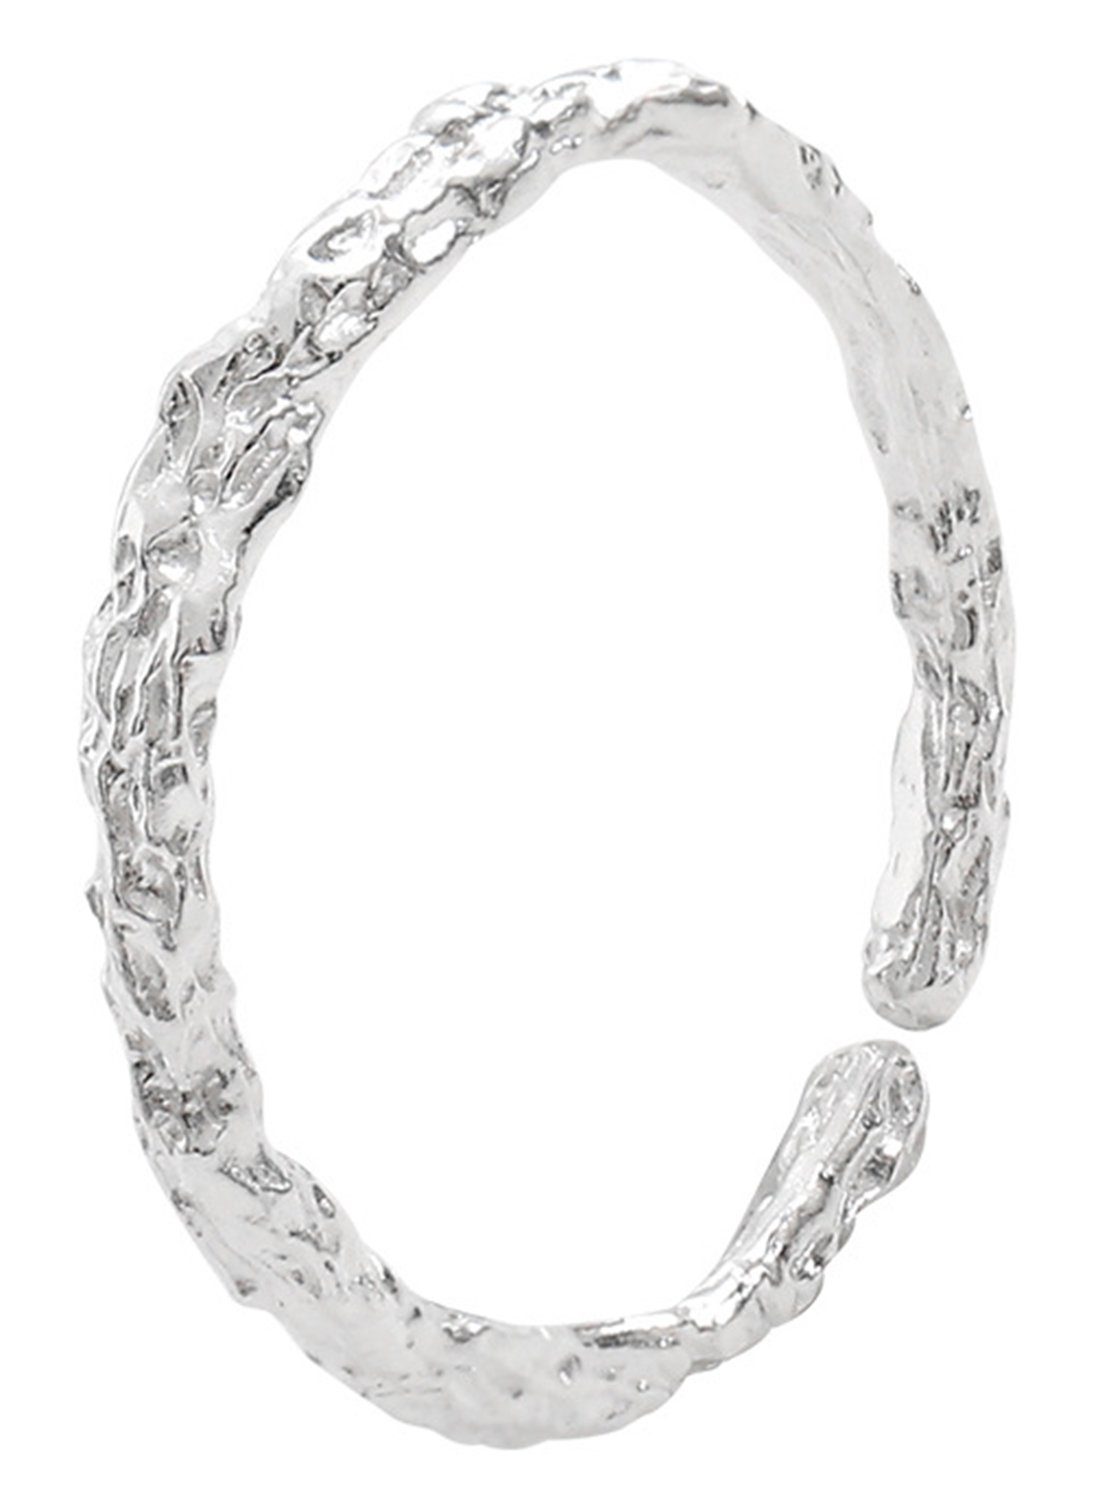 Haiaveng Fingerring 925 Silber Ringe,Offener Ringe mit ineinander greifenden Zweigen, Verstellbarer Ringe für Männer und Damen